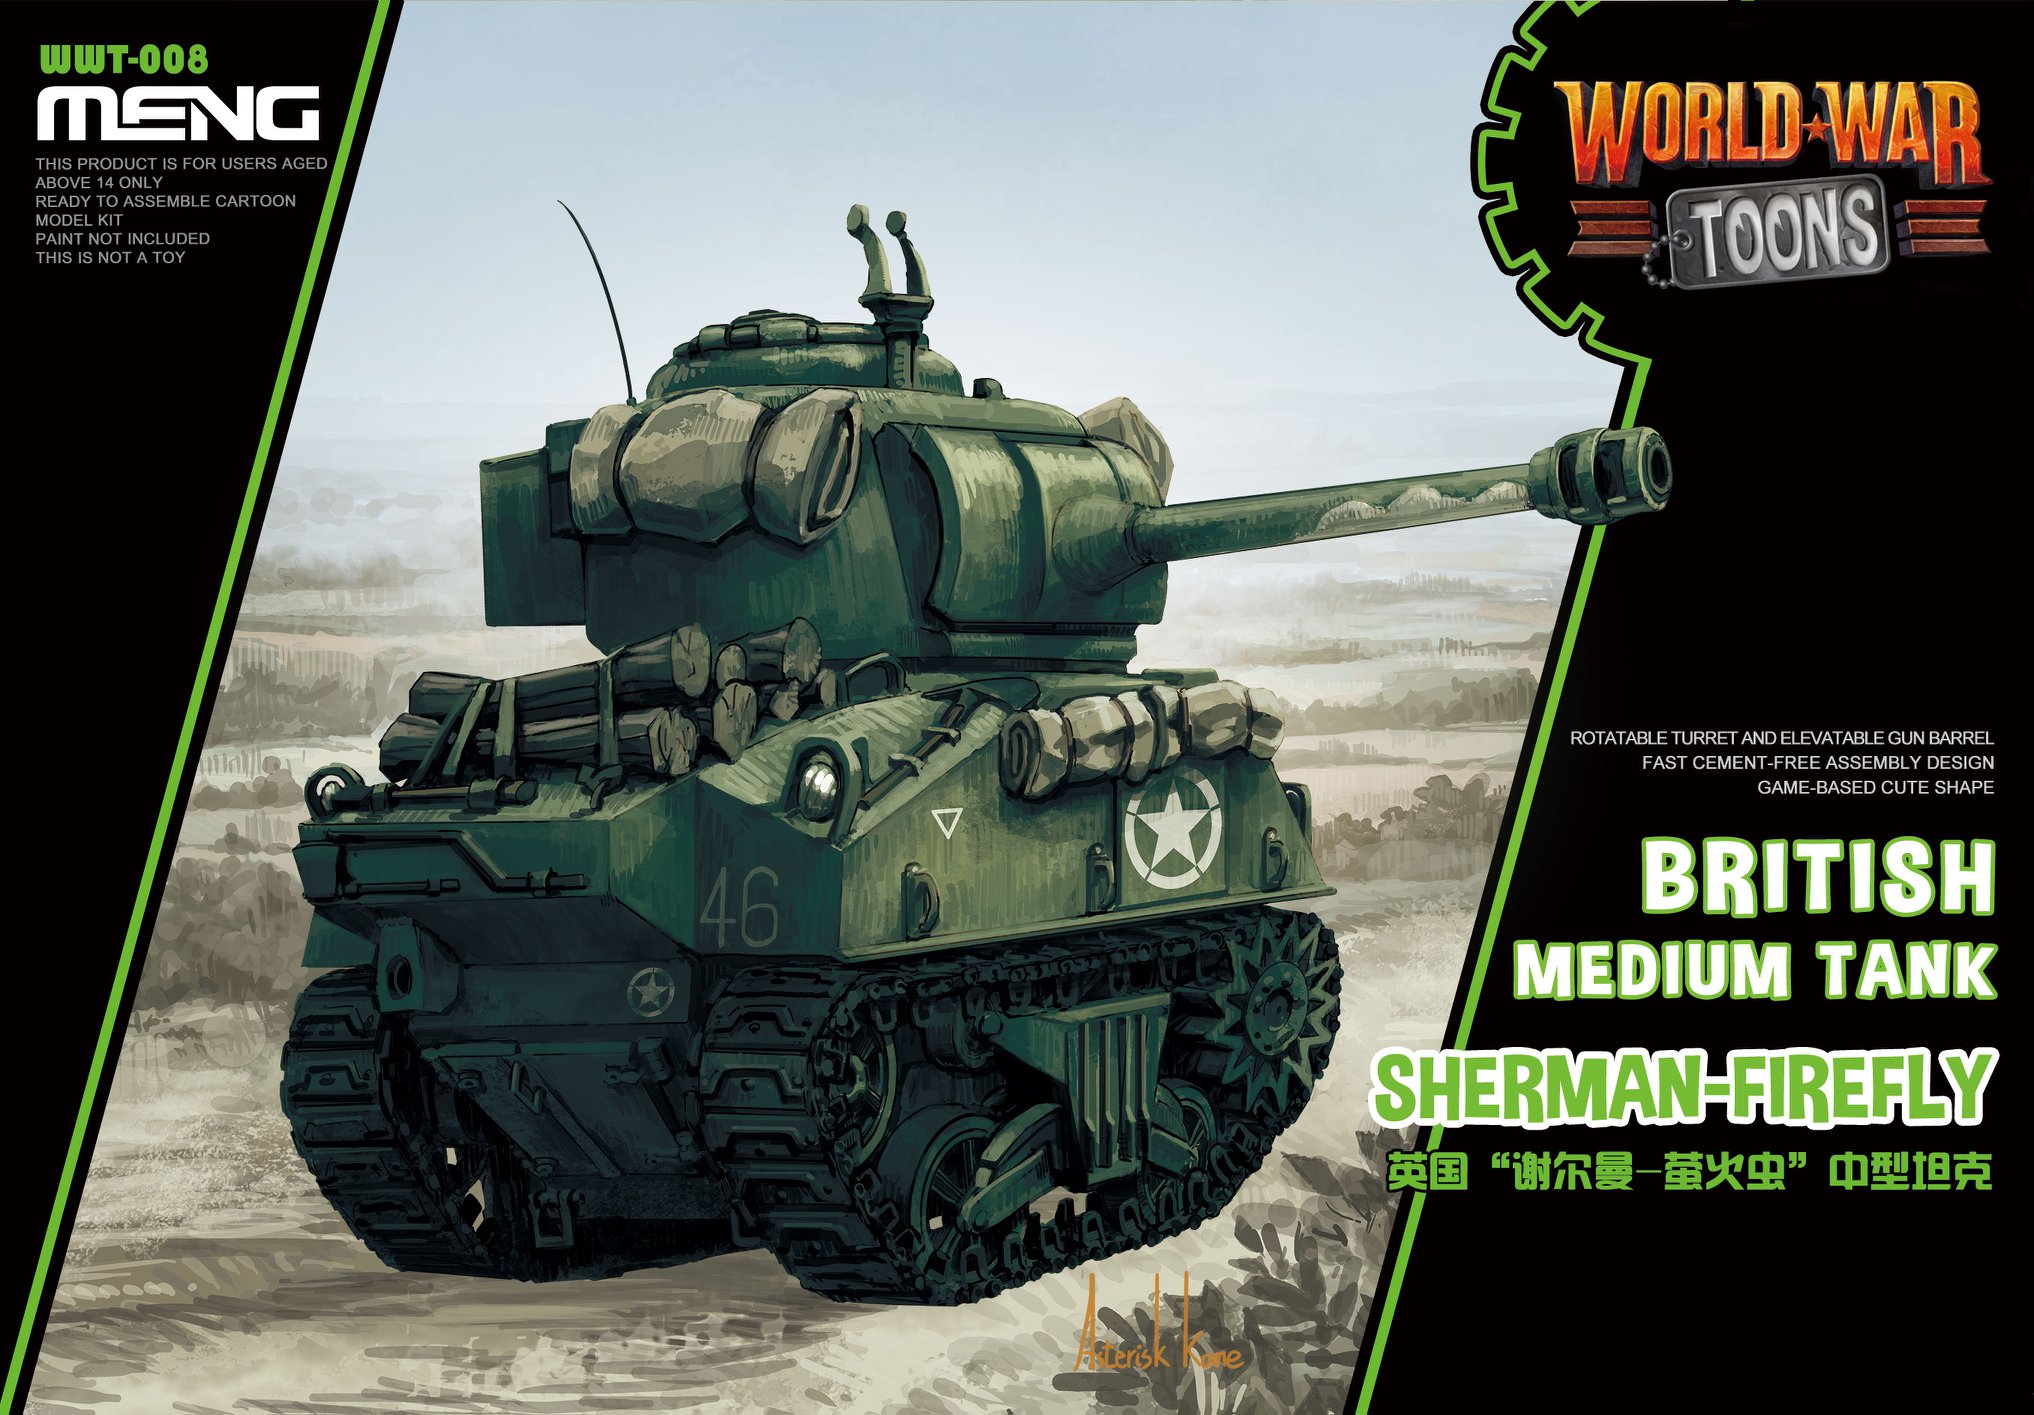 British Medium Tank Sherman-Firefly (Cartoon model)